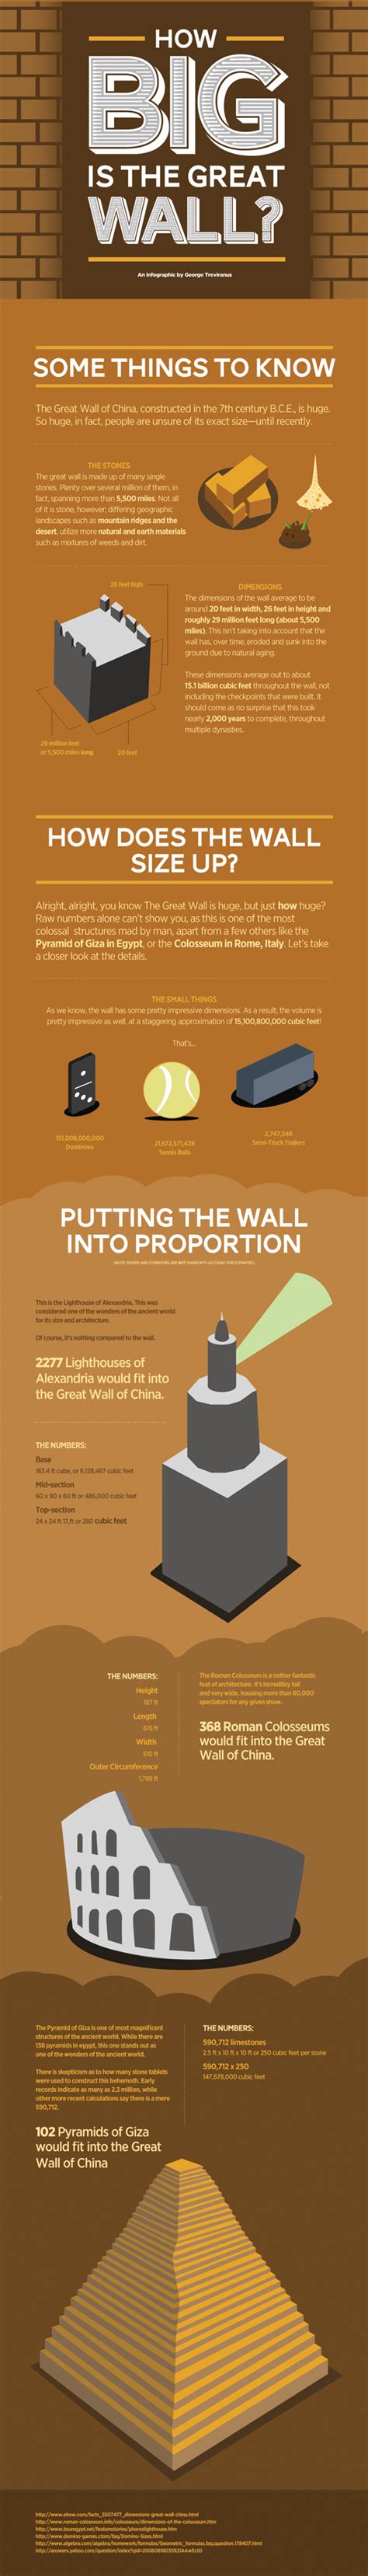 Datos sobre la Gran Muralla China #infografia #infographic   TICs y ...